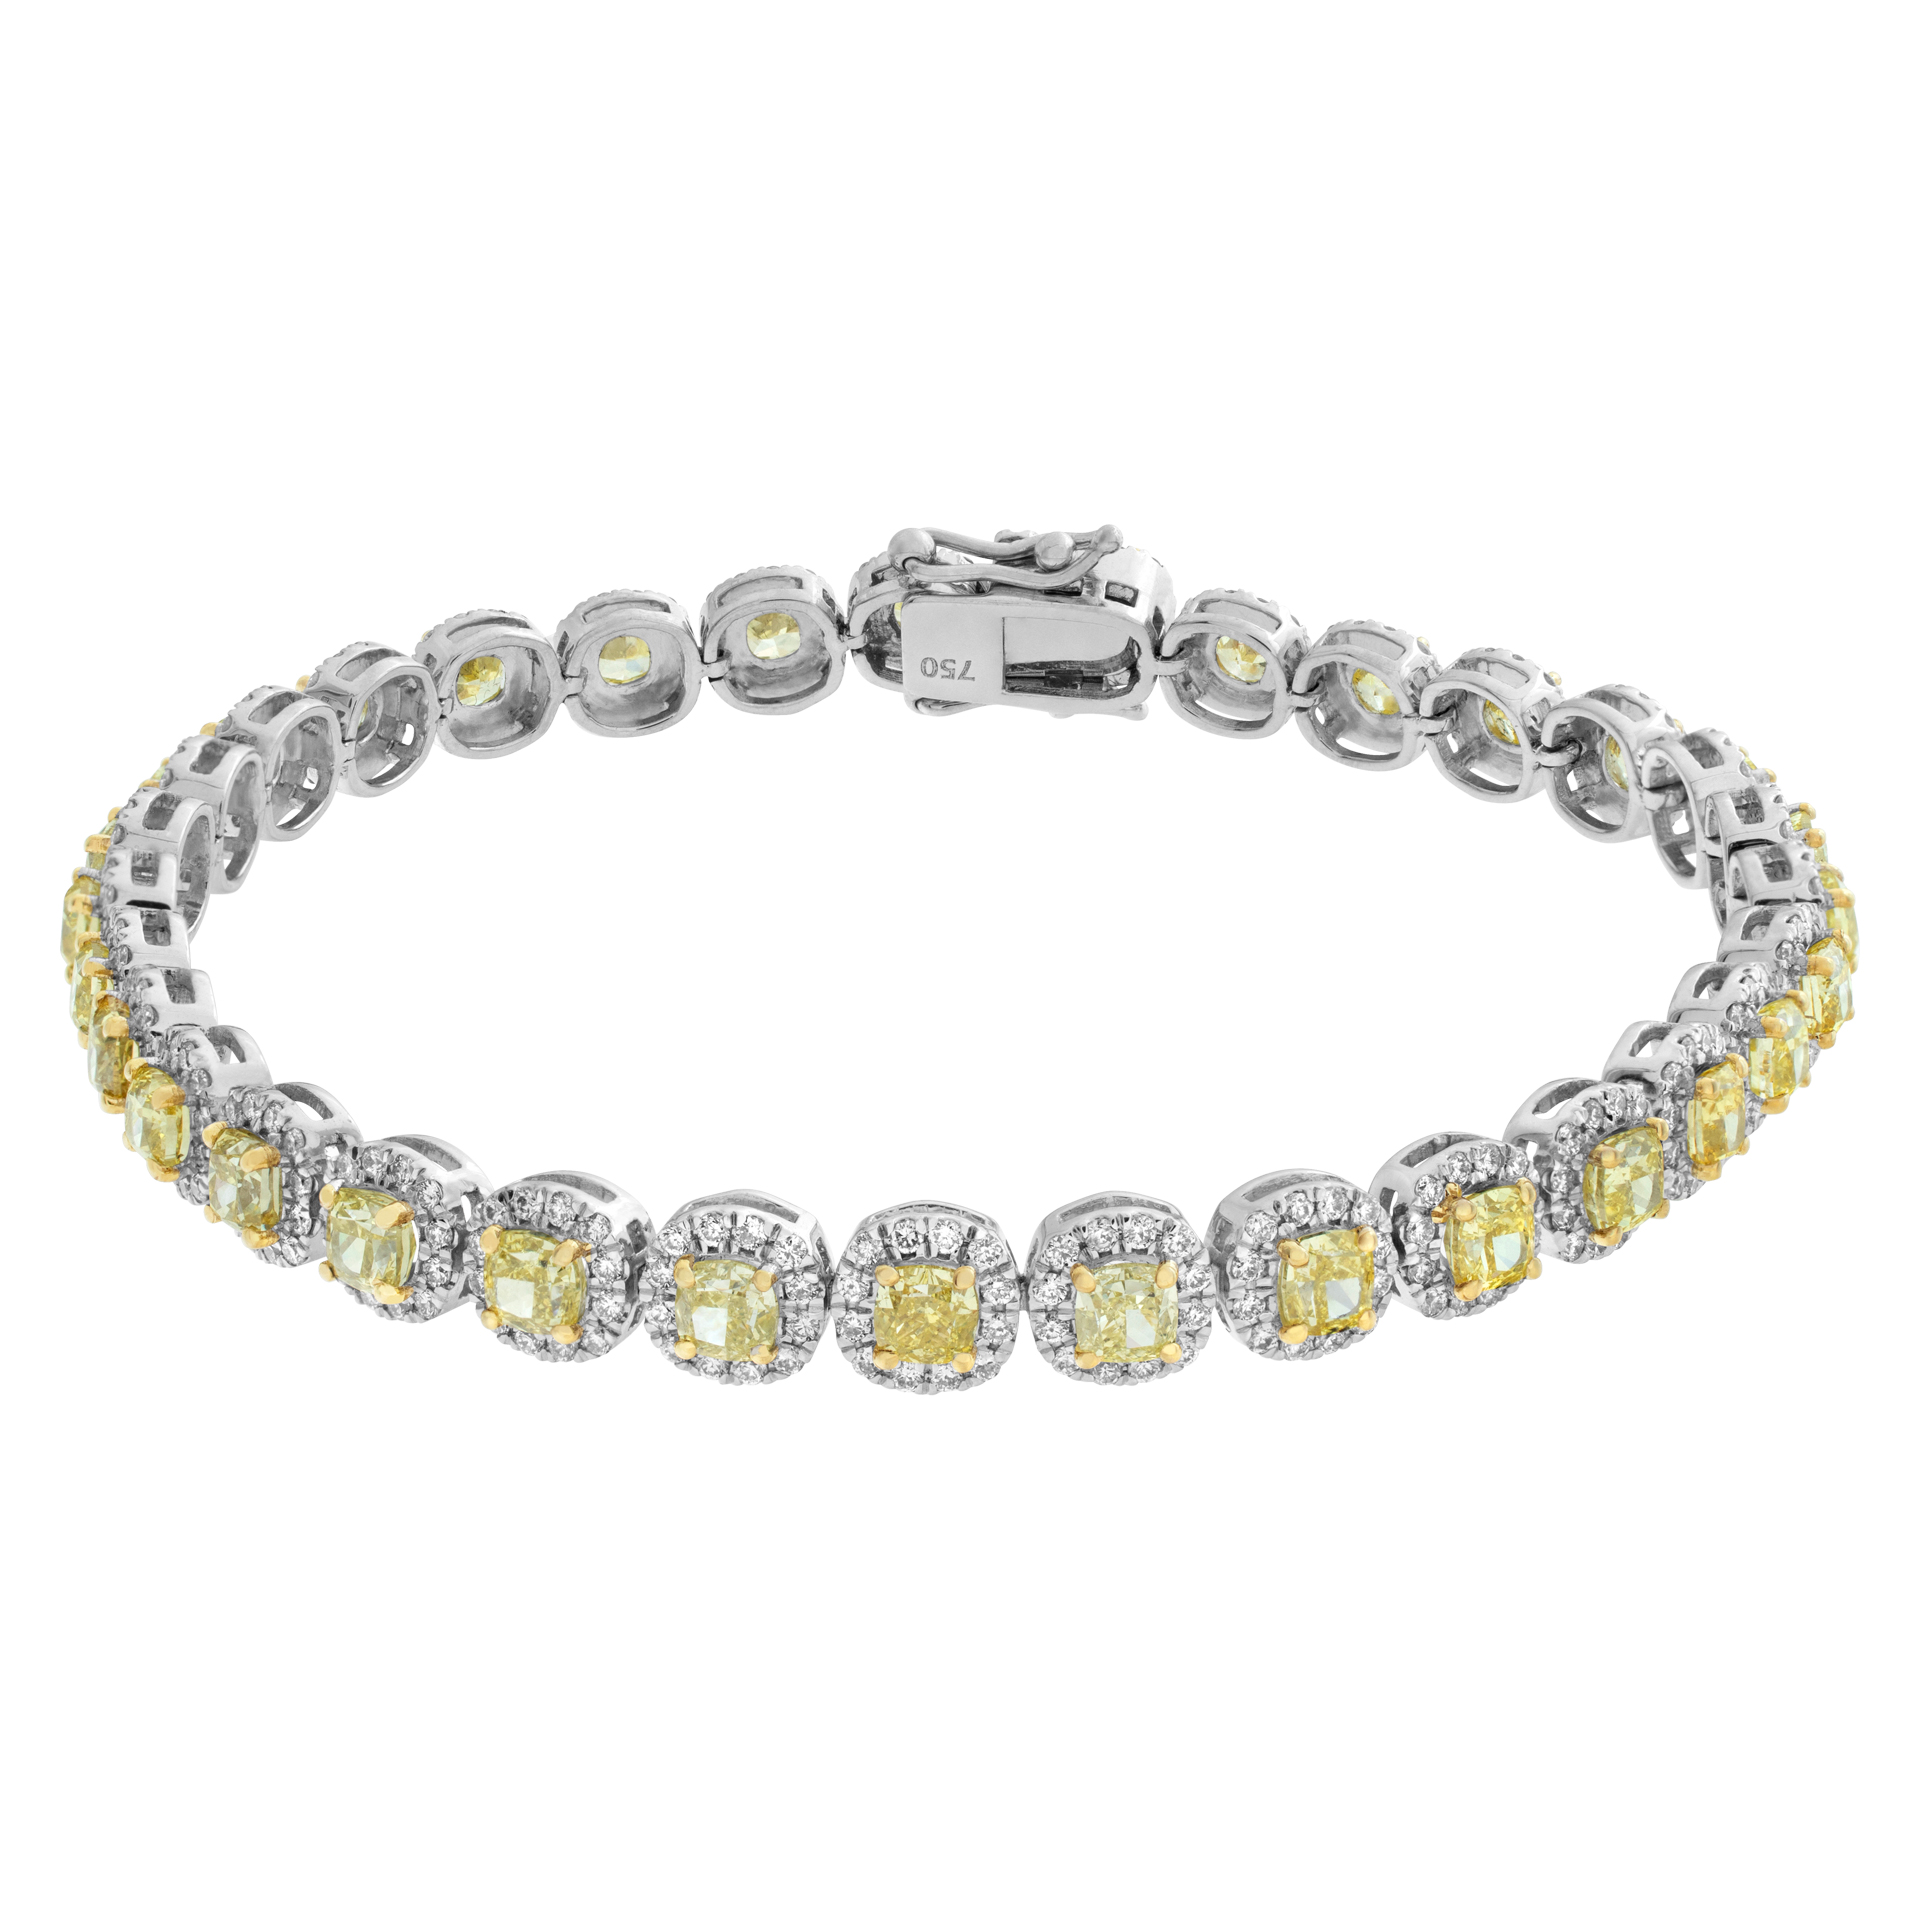 Yellow diamond bracelet with white diamond accents